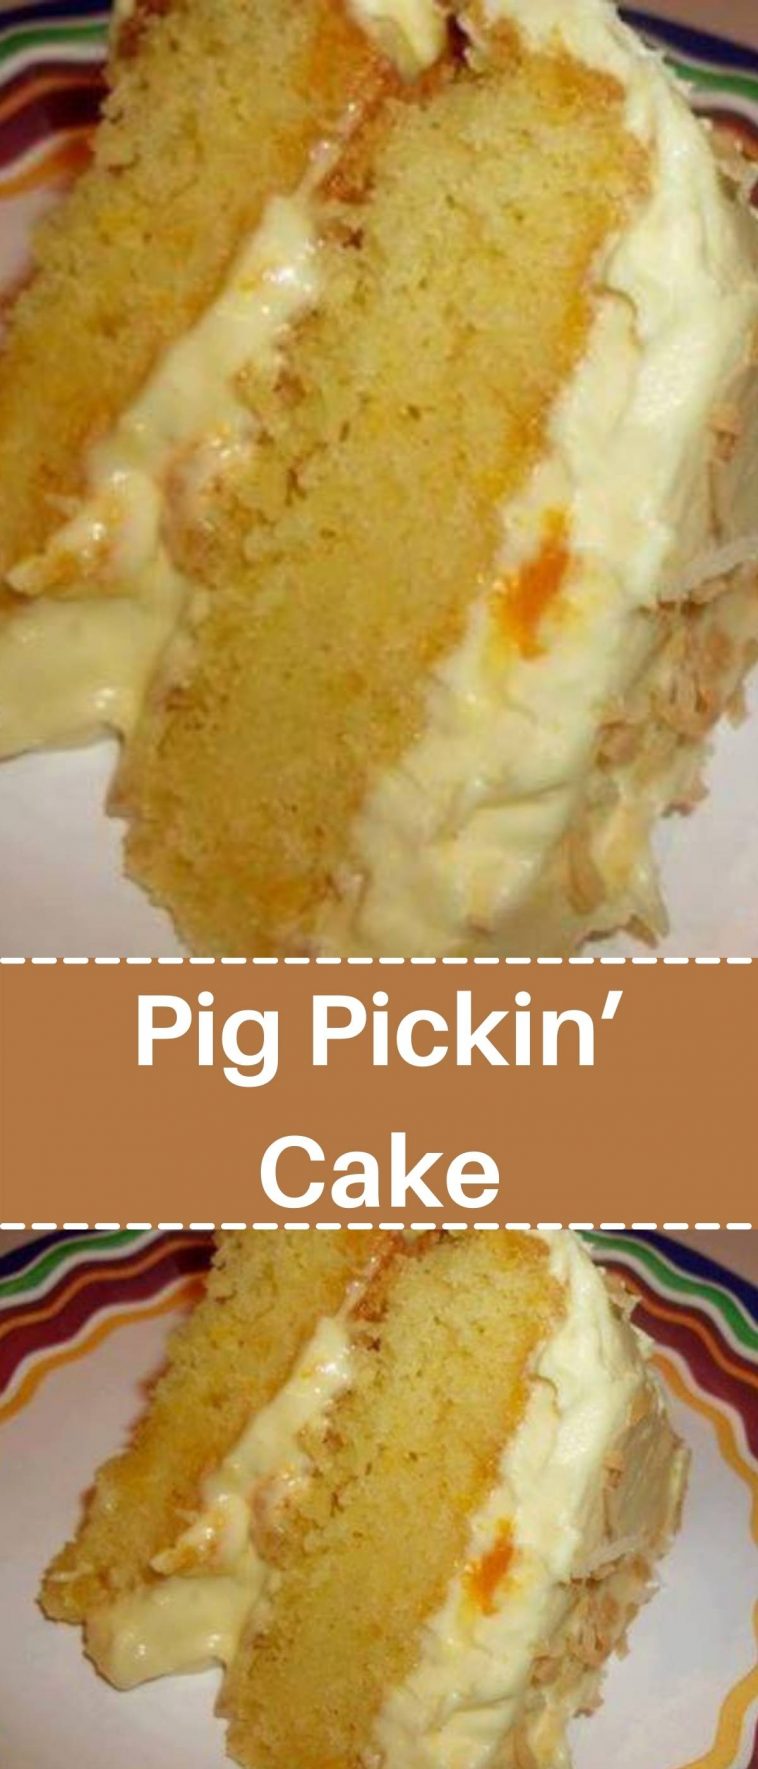 Pig Pickin’ Cake